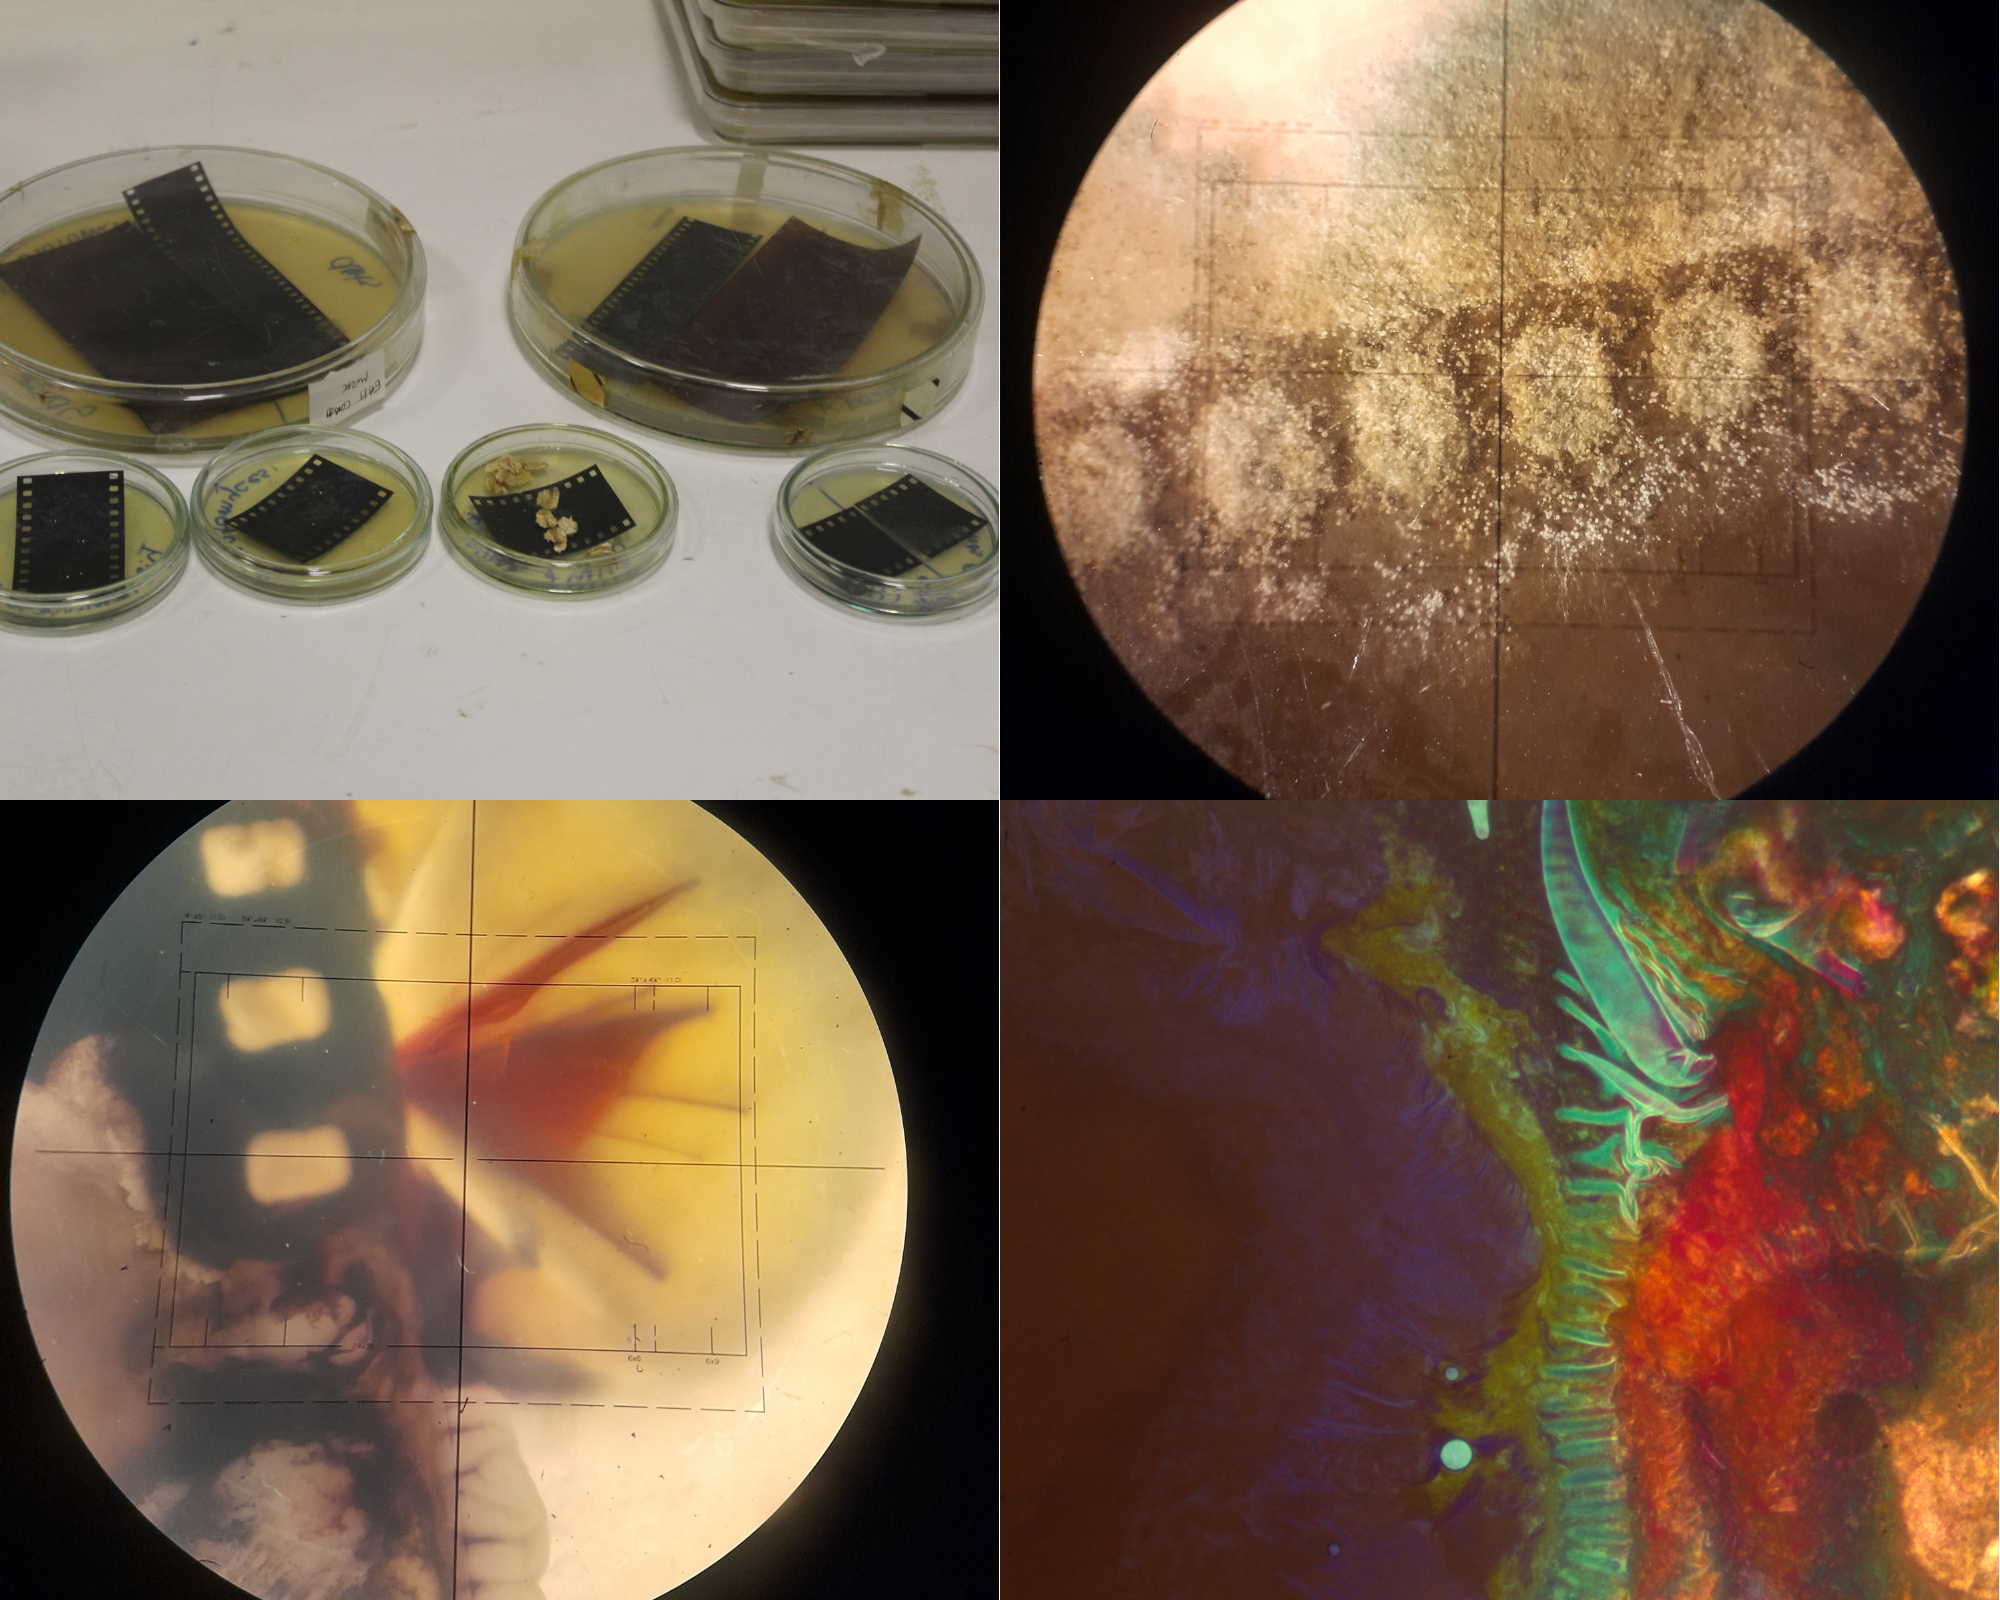 Imogen Locke – bacteria growing on film